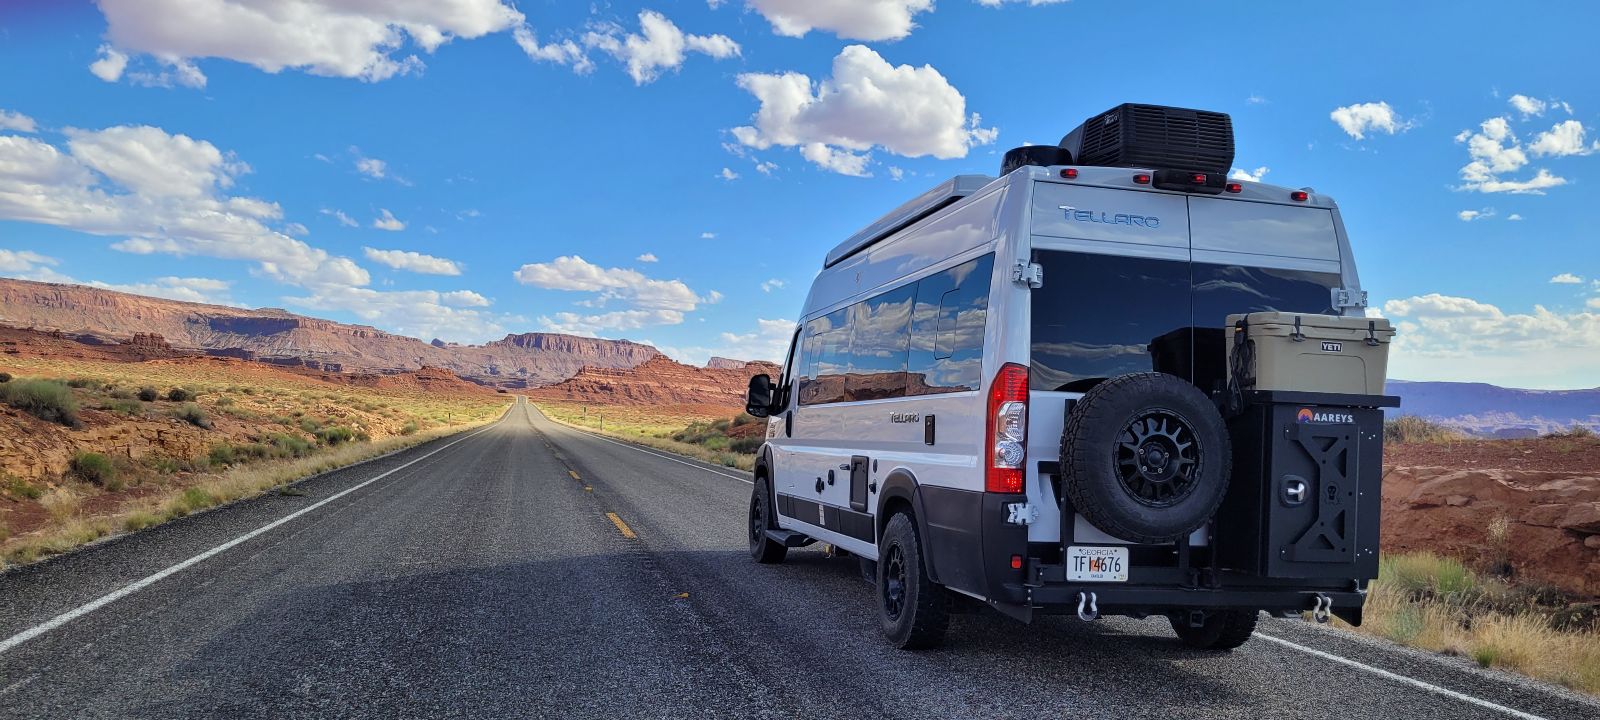 Van on desert highway